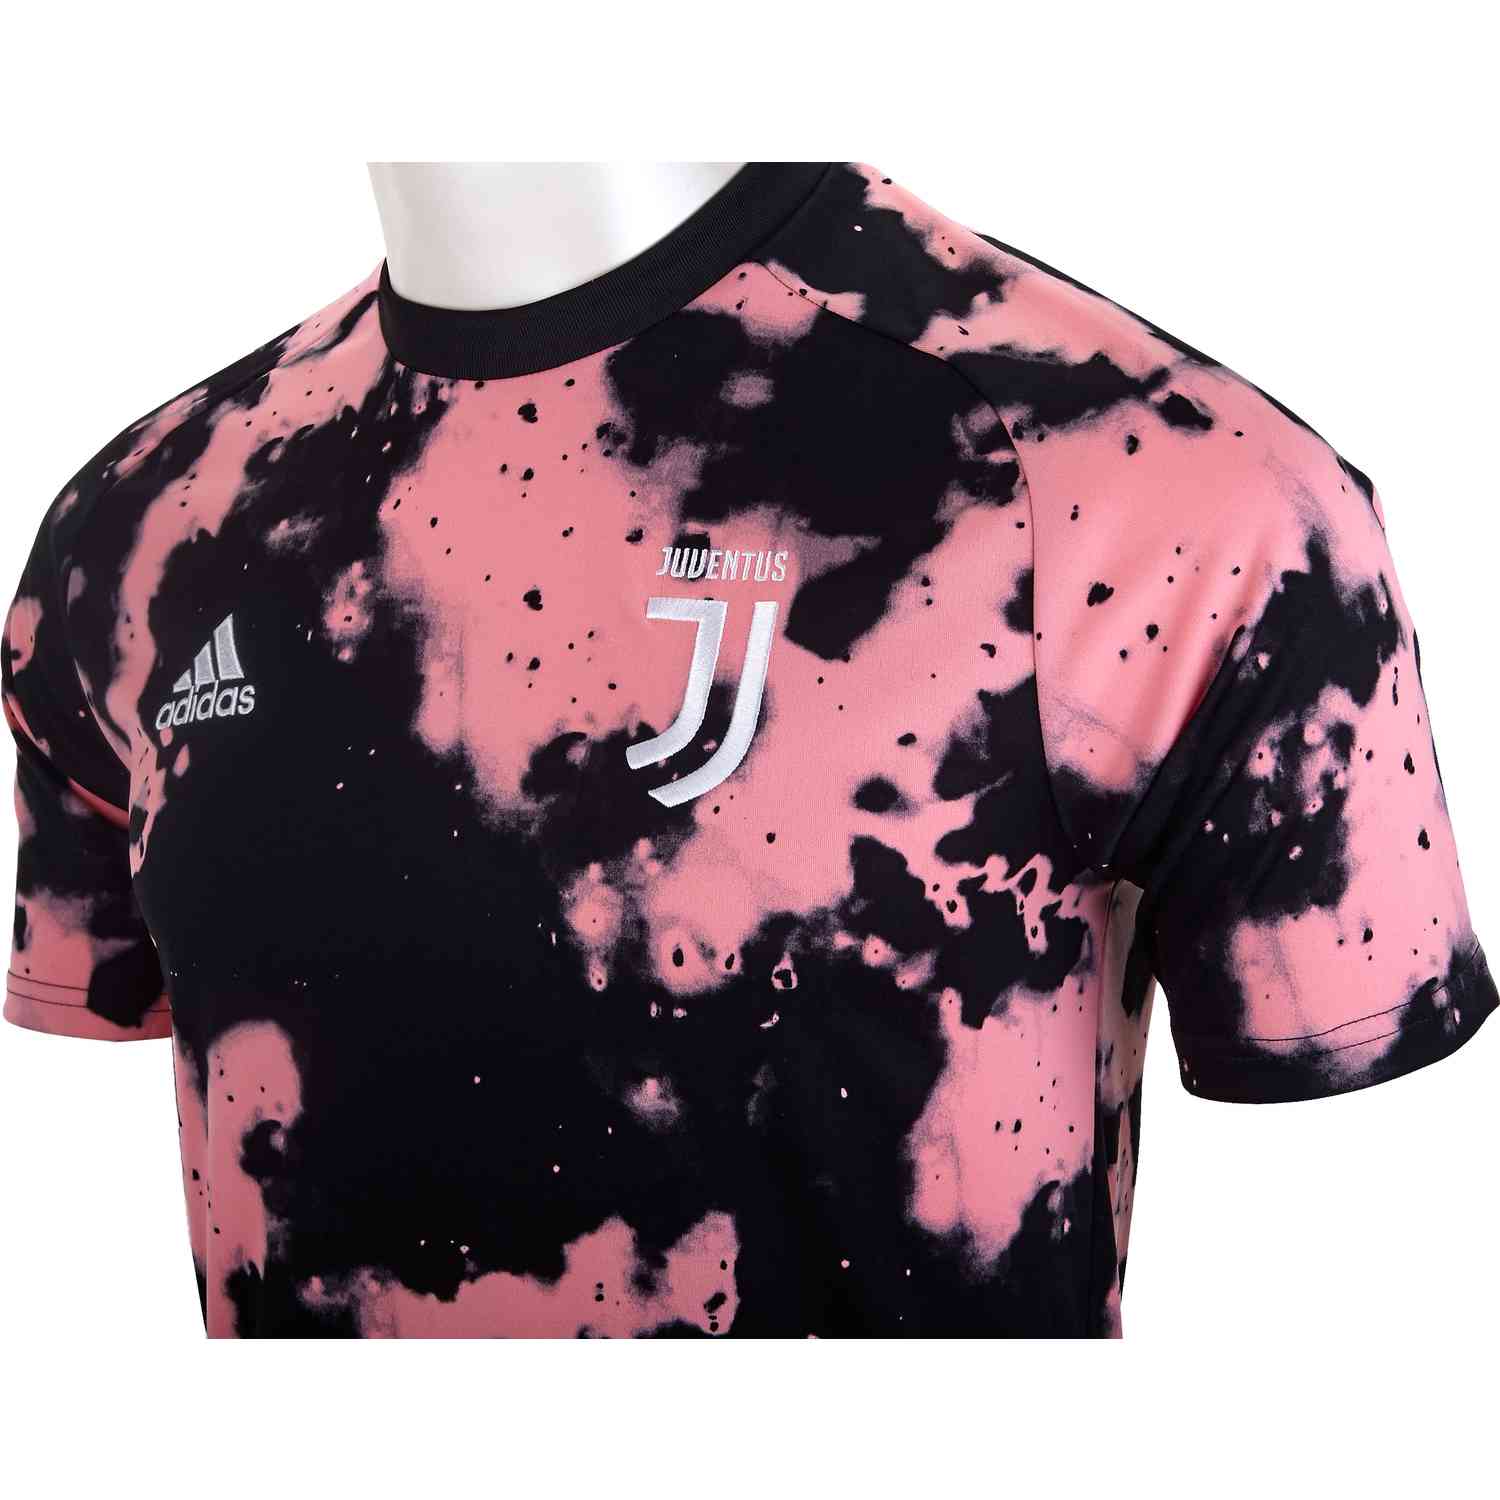 juventus jersey pink and black